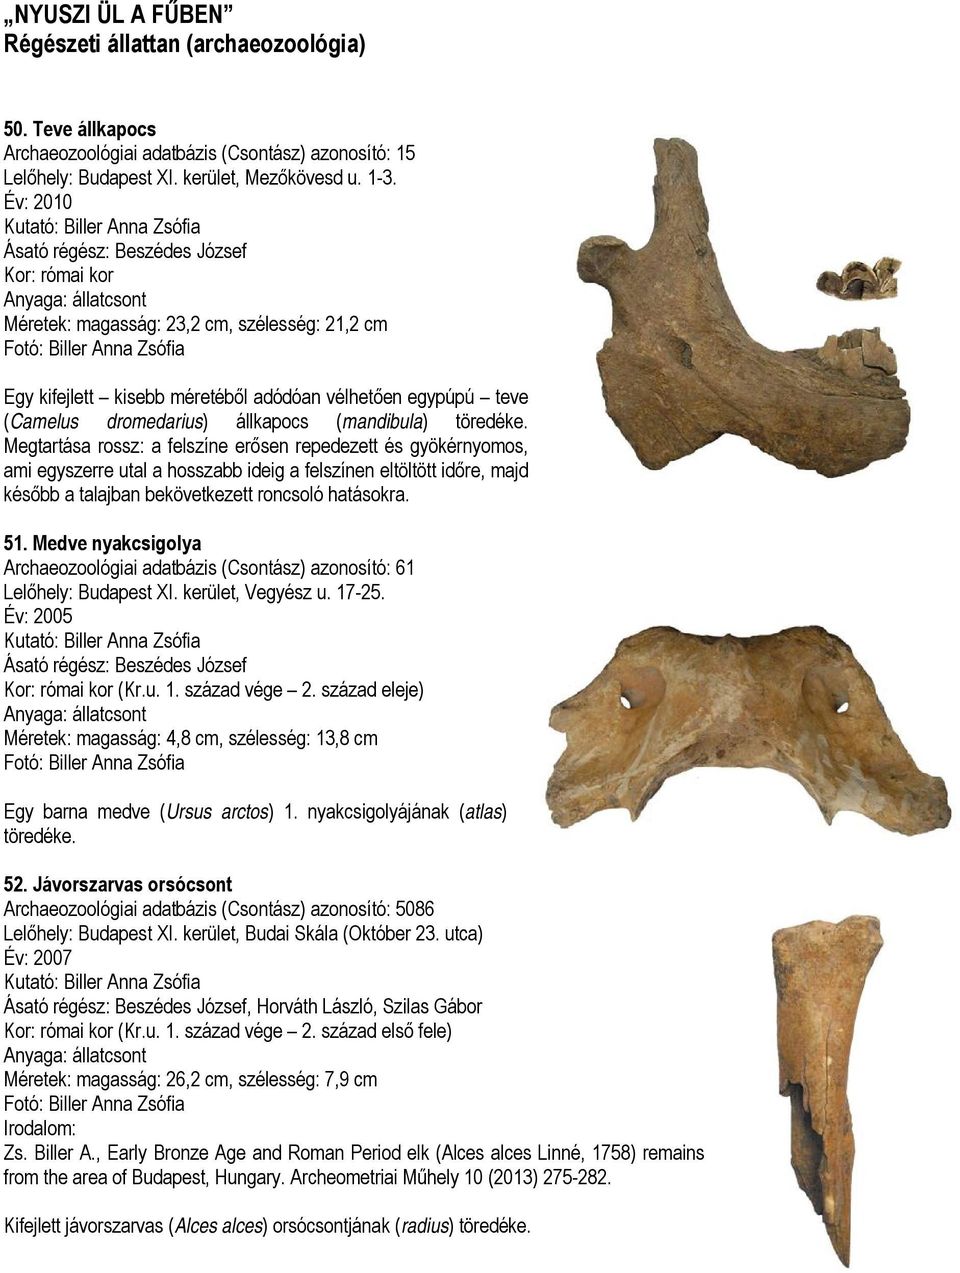 méretéből adódóan vélhetően egypúpú teve (Camelus dromedarius) állkapocs (mandibula) töredéke.